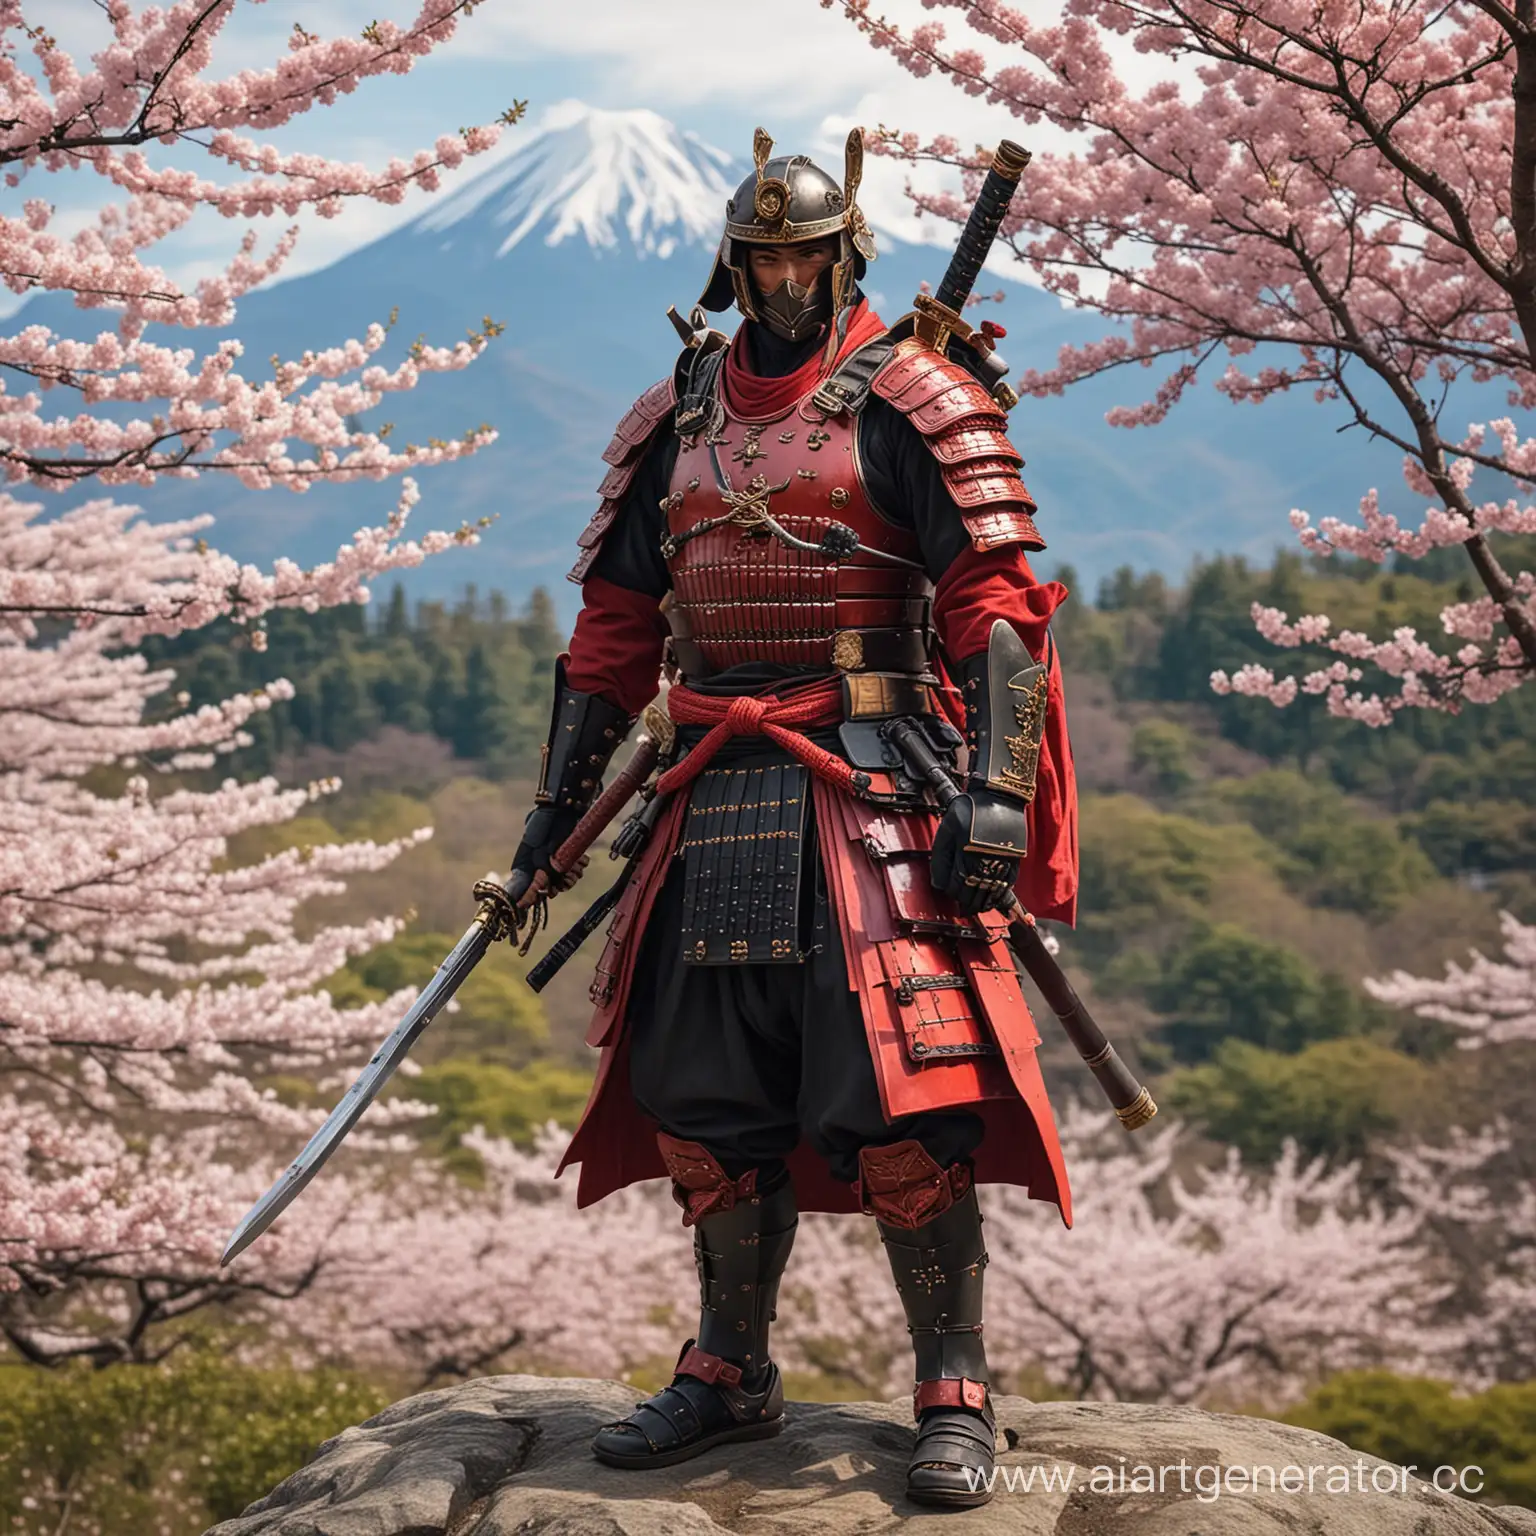 Самурай стоит в красной самурайской броне, в руке маузер, на фоне сакура и гора японская
